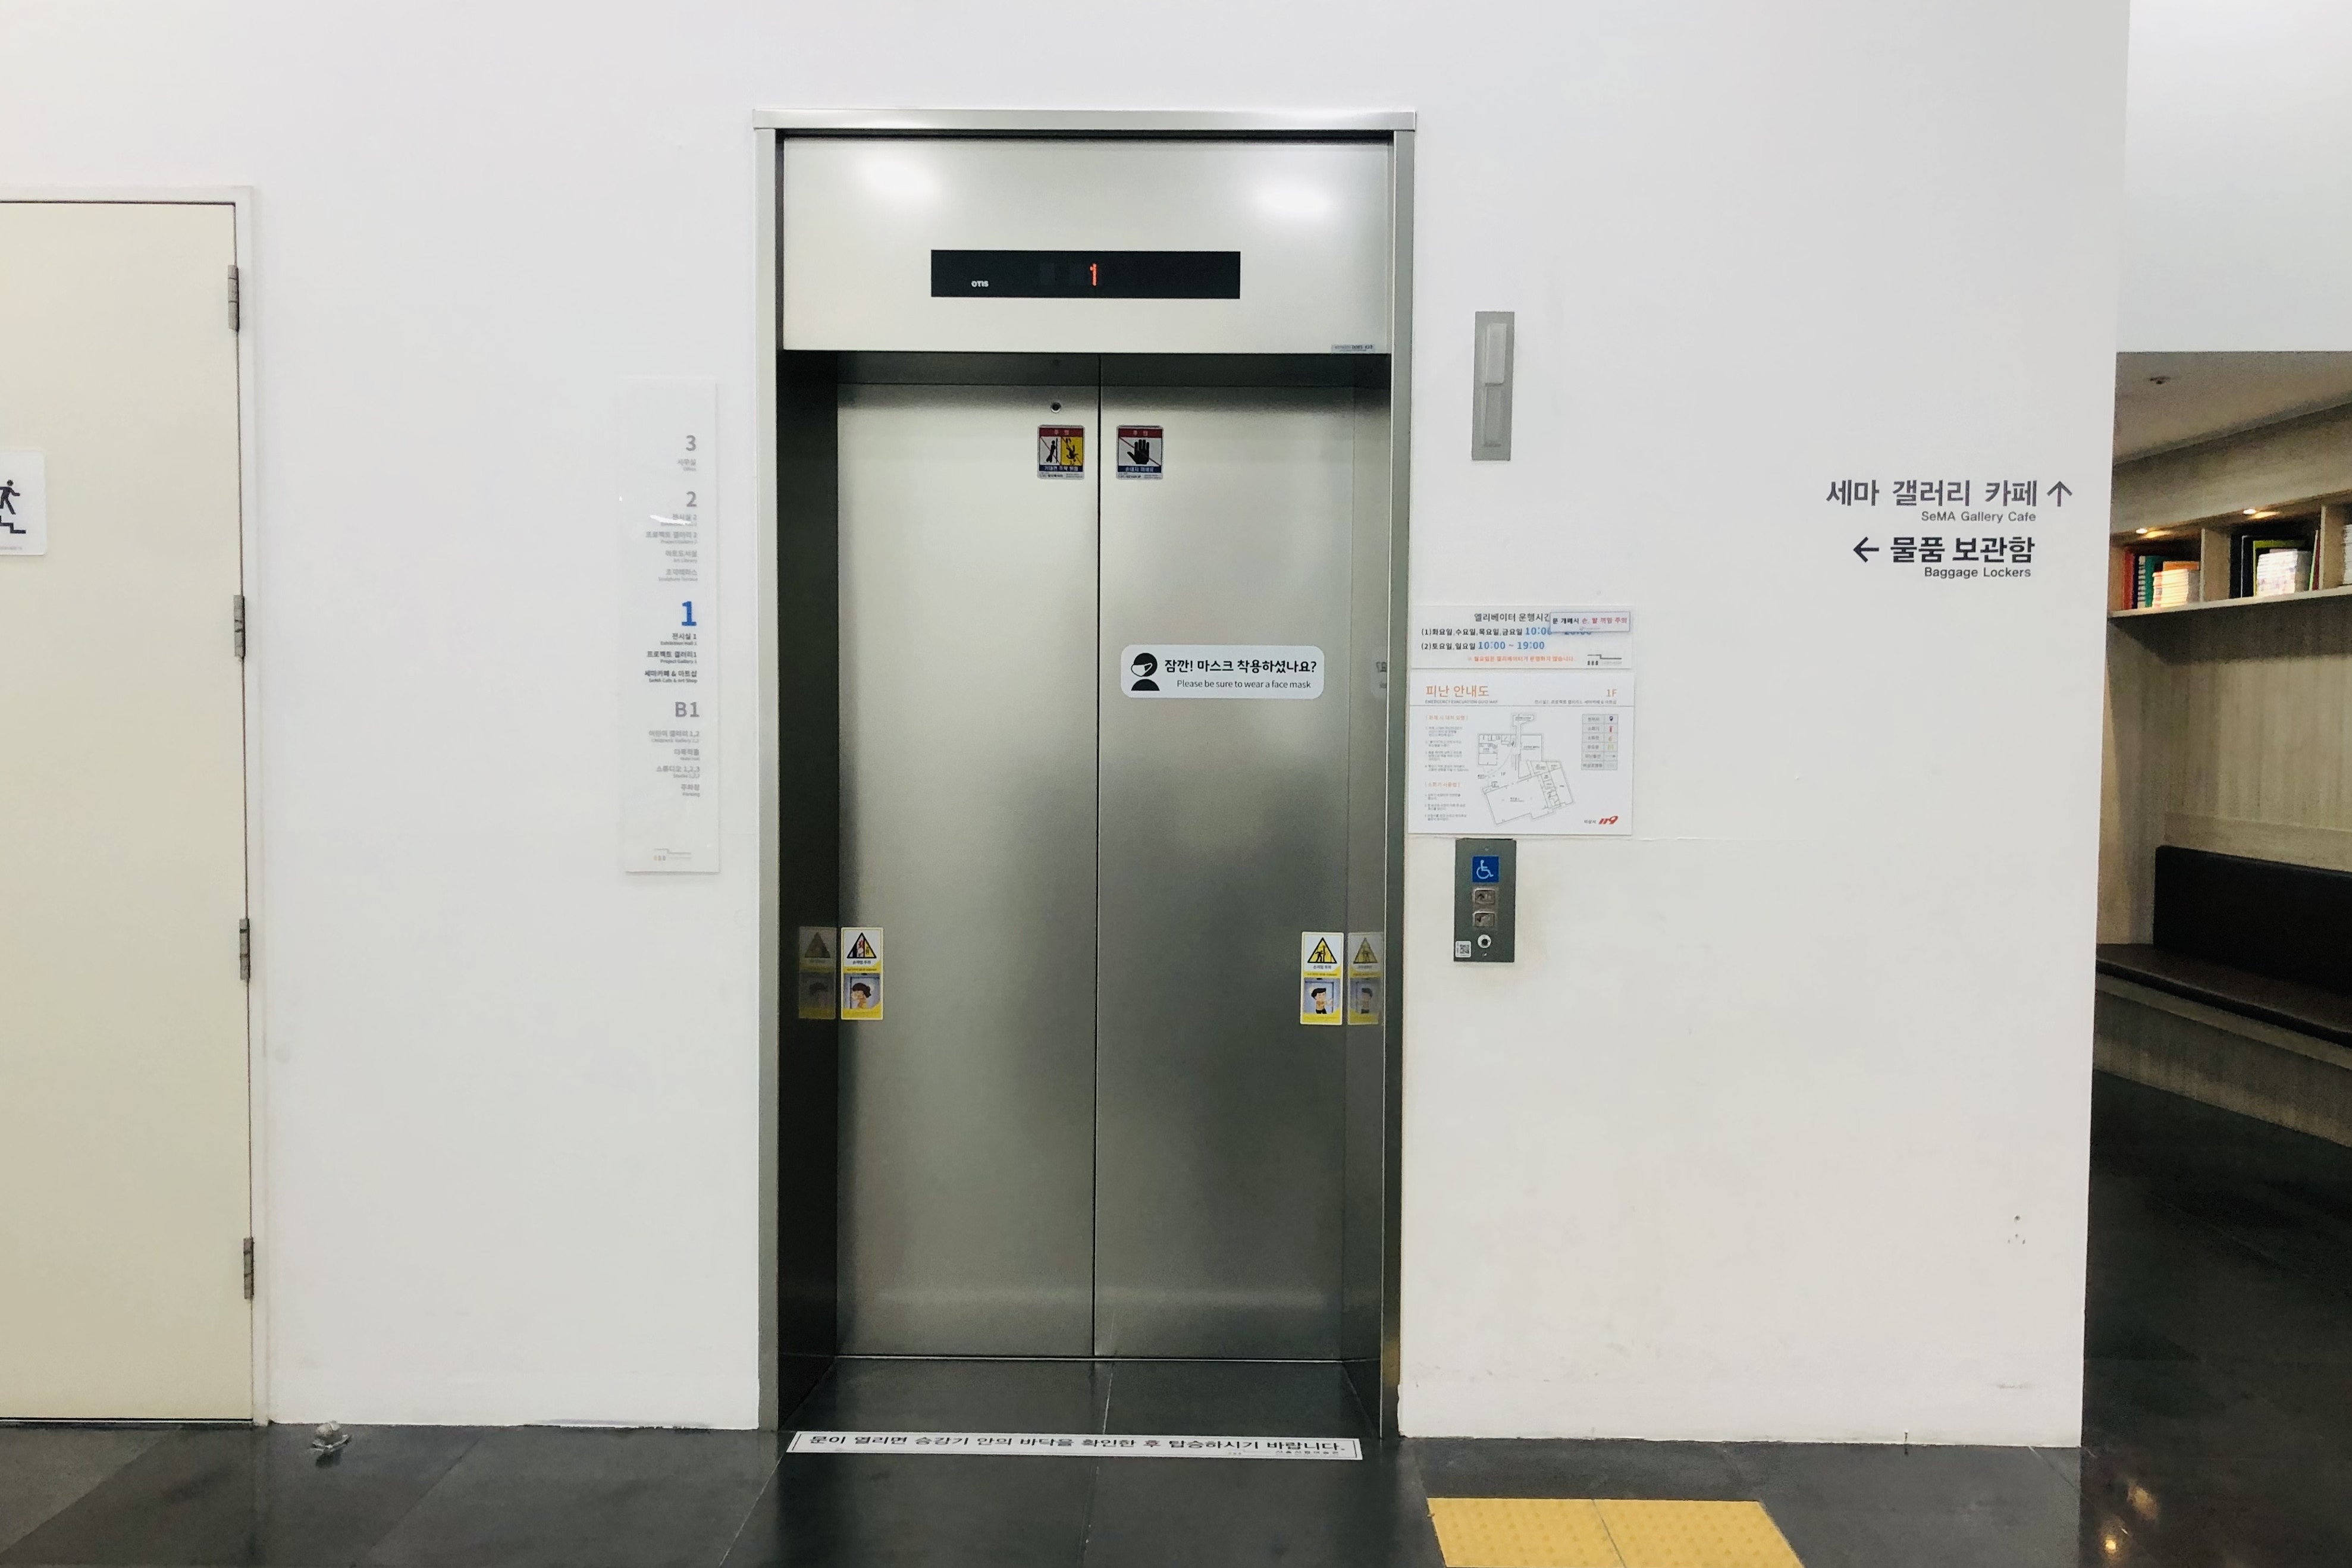 엘리베이터0 : 미술관 내부에 설치된 엘리베이터